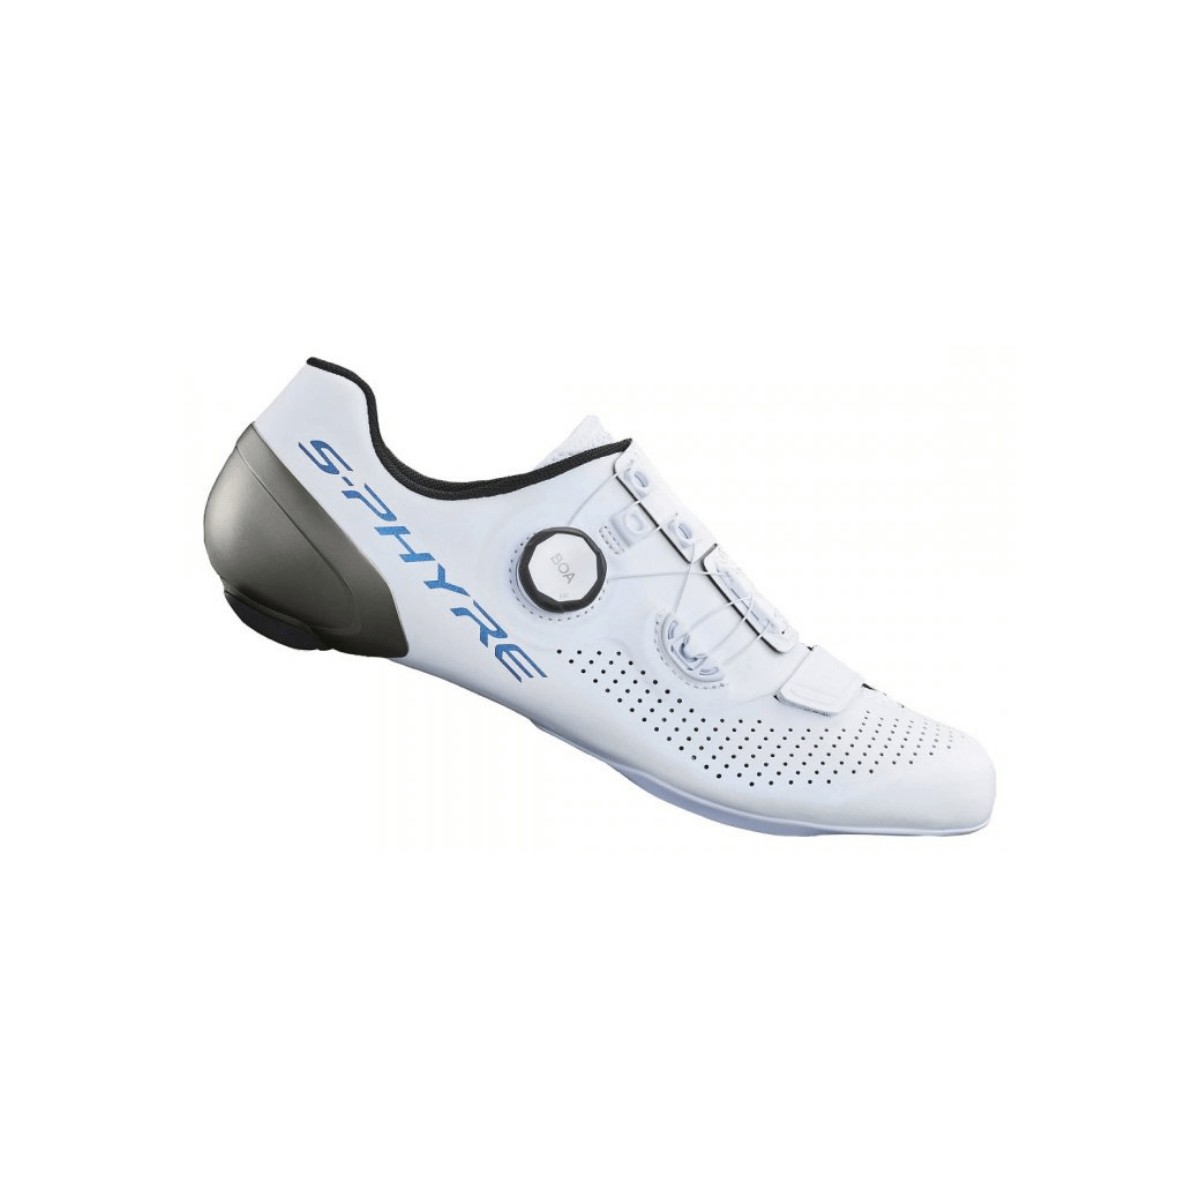 Schuhe Shimano SH-RC902T Weiß Schwarz, Größe 42 - EUR